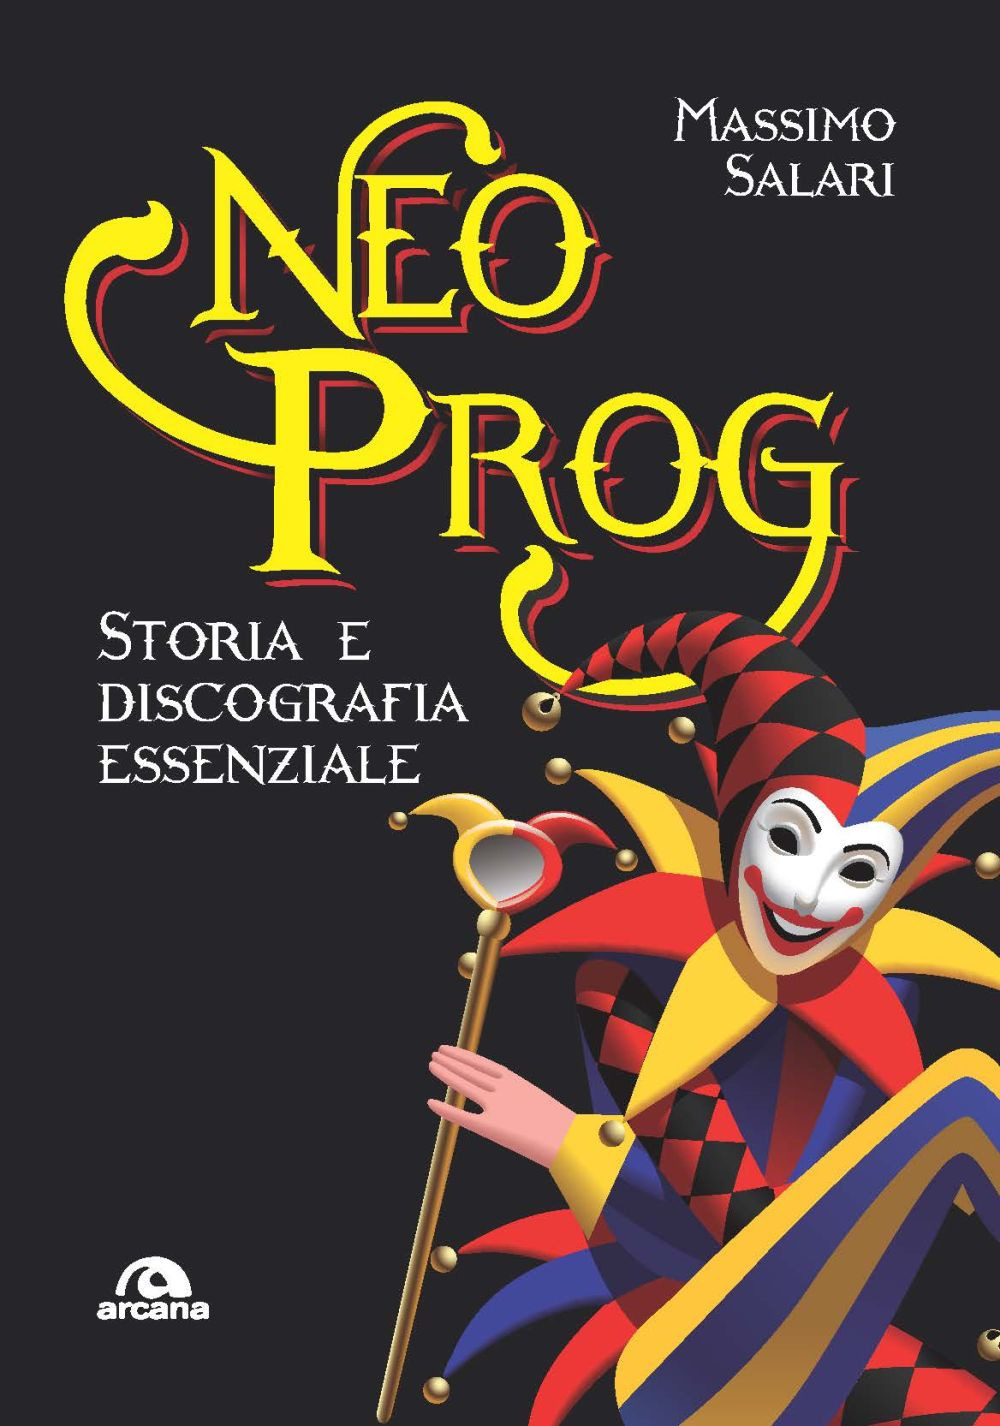 Libri Massimo Salari - Neo Prog. Storia E Discografia Essenziale NUOVO SIGILLATO, EDIZIONE DEL 29/10/2020 SUBITO DISPONIBILE